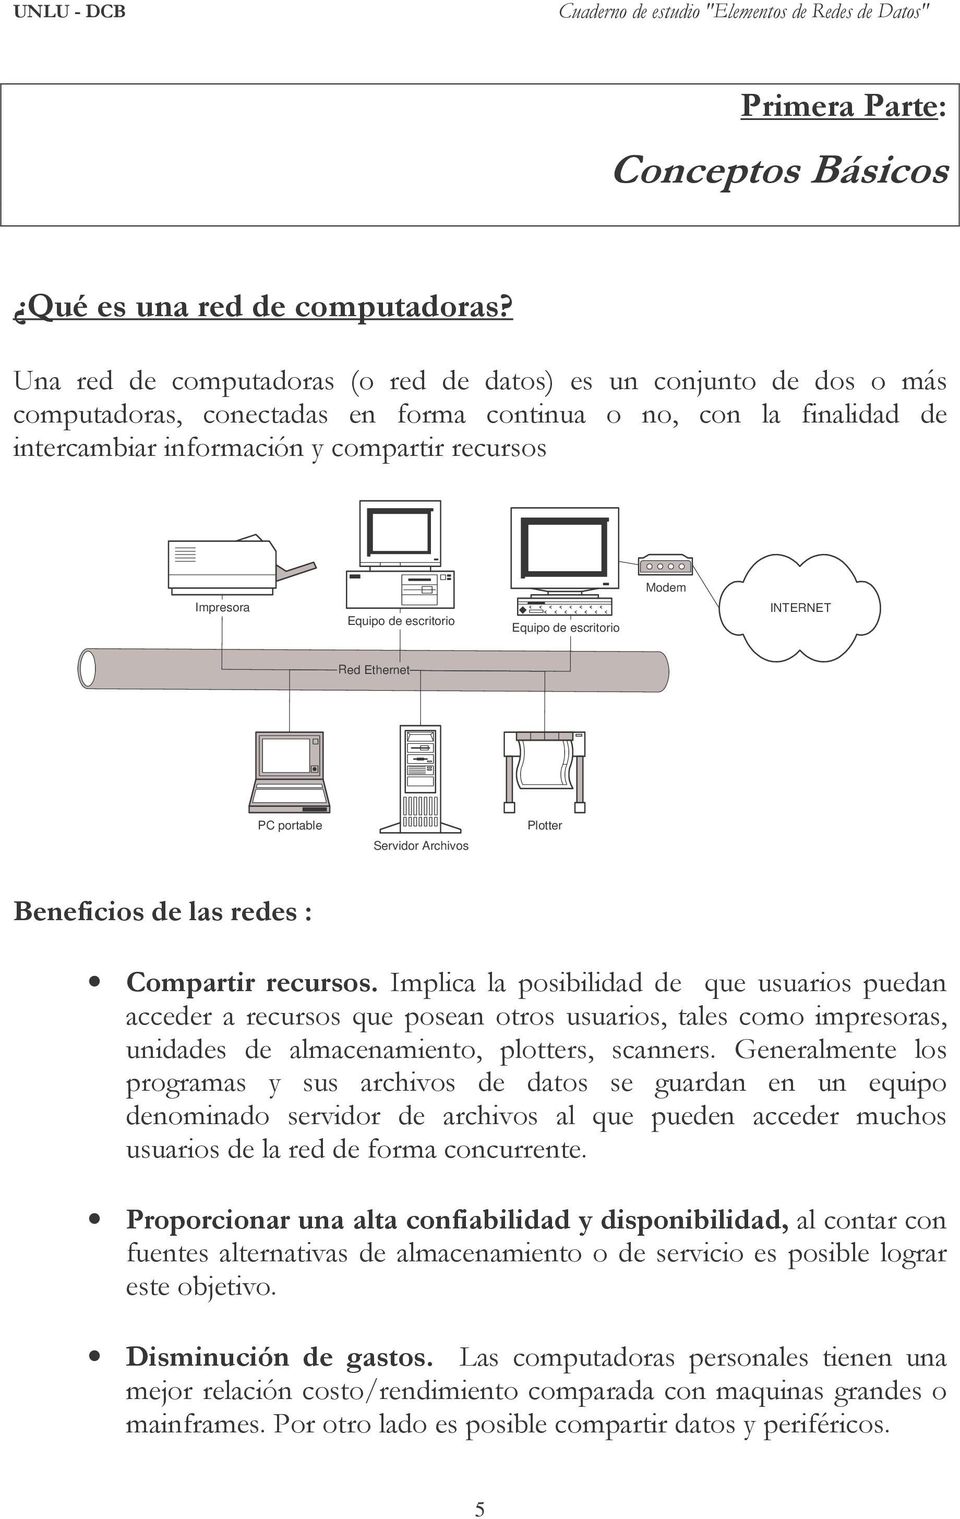 Equipo de escritorio Equipo de escritorio INTERNET Red Ethernet PC portable Servidor Archivos Plotter Beneficios de las redes : Compartir recursos.